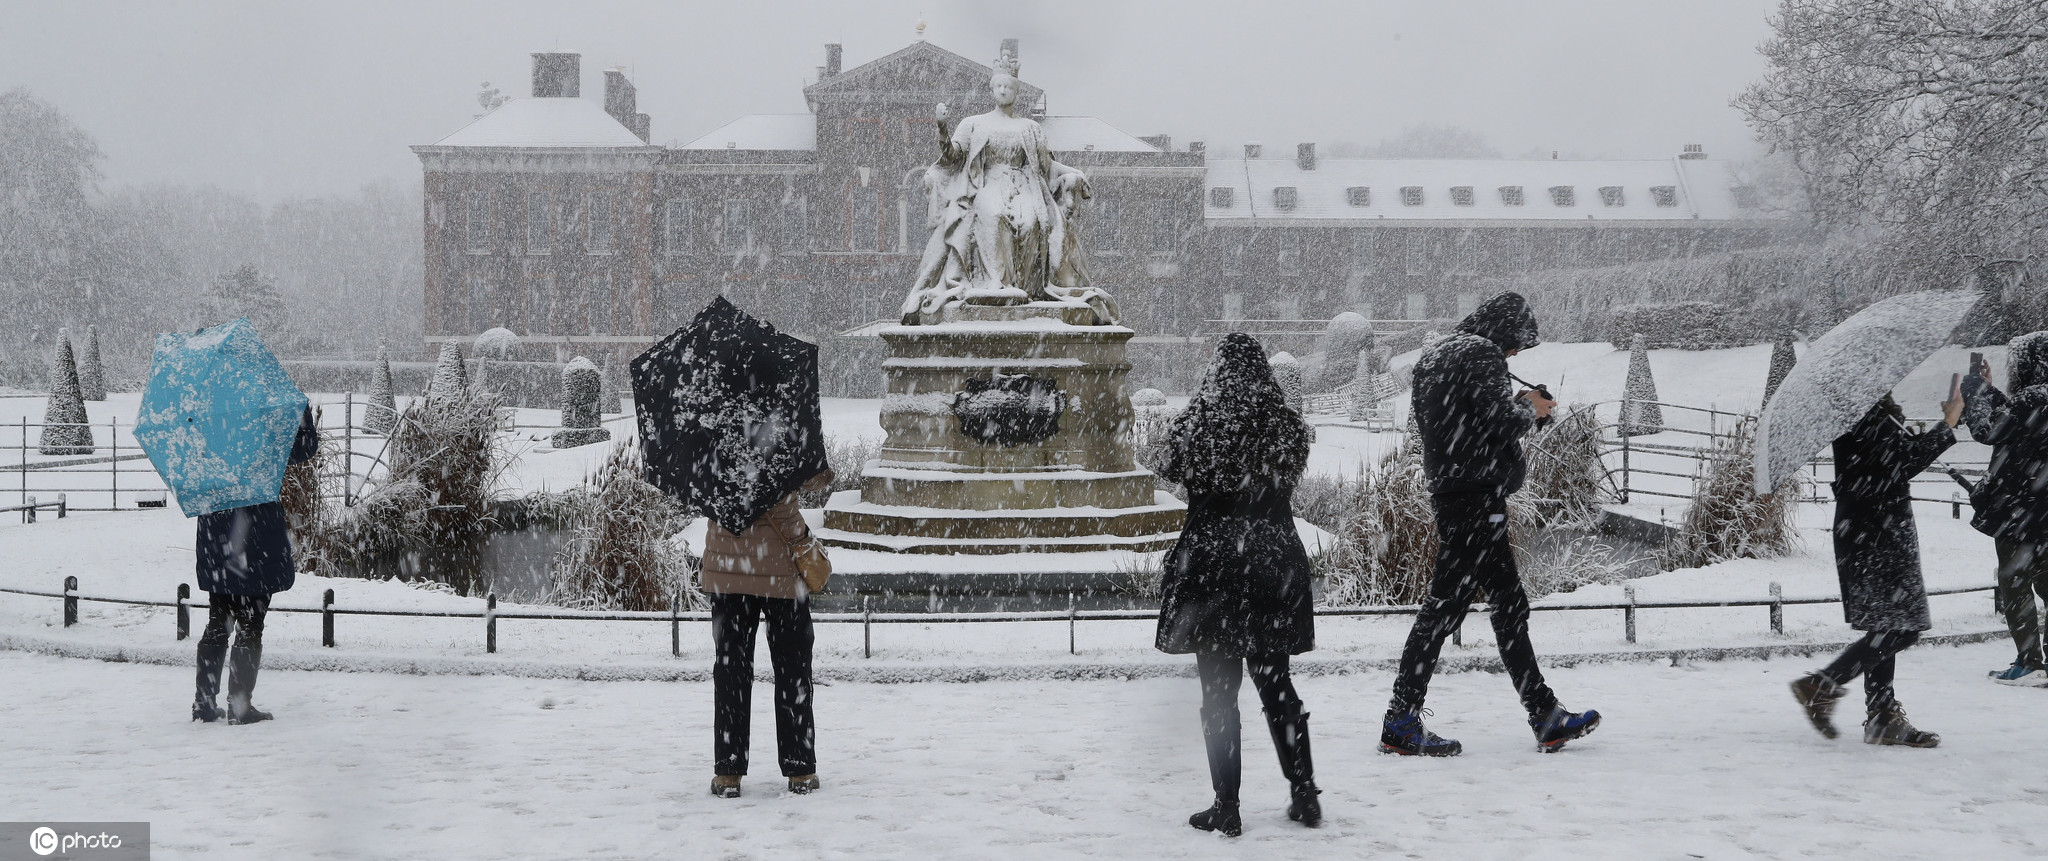 英国伦敦,当地迎来降雪,城市被积雪覆盖,民众大雪中嬉戏欣赏雪景